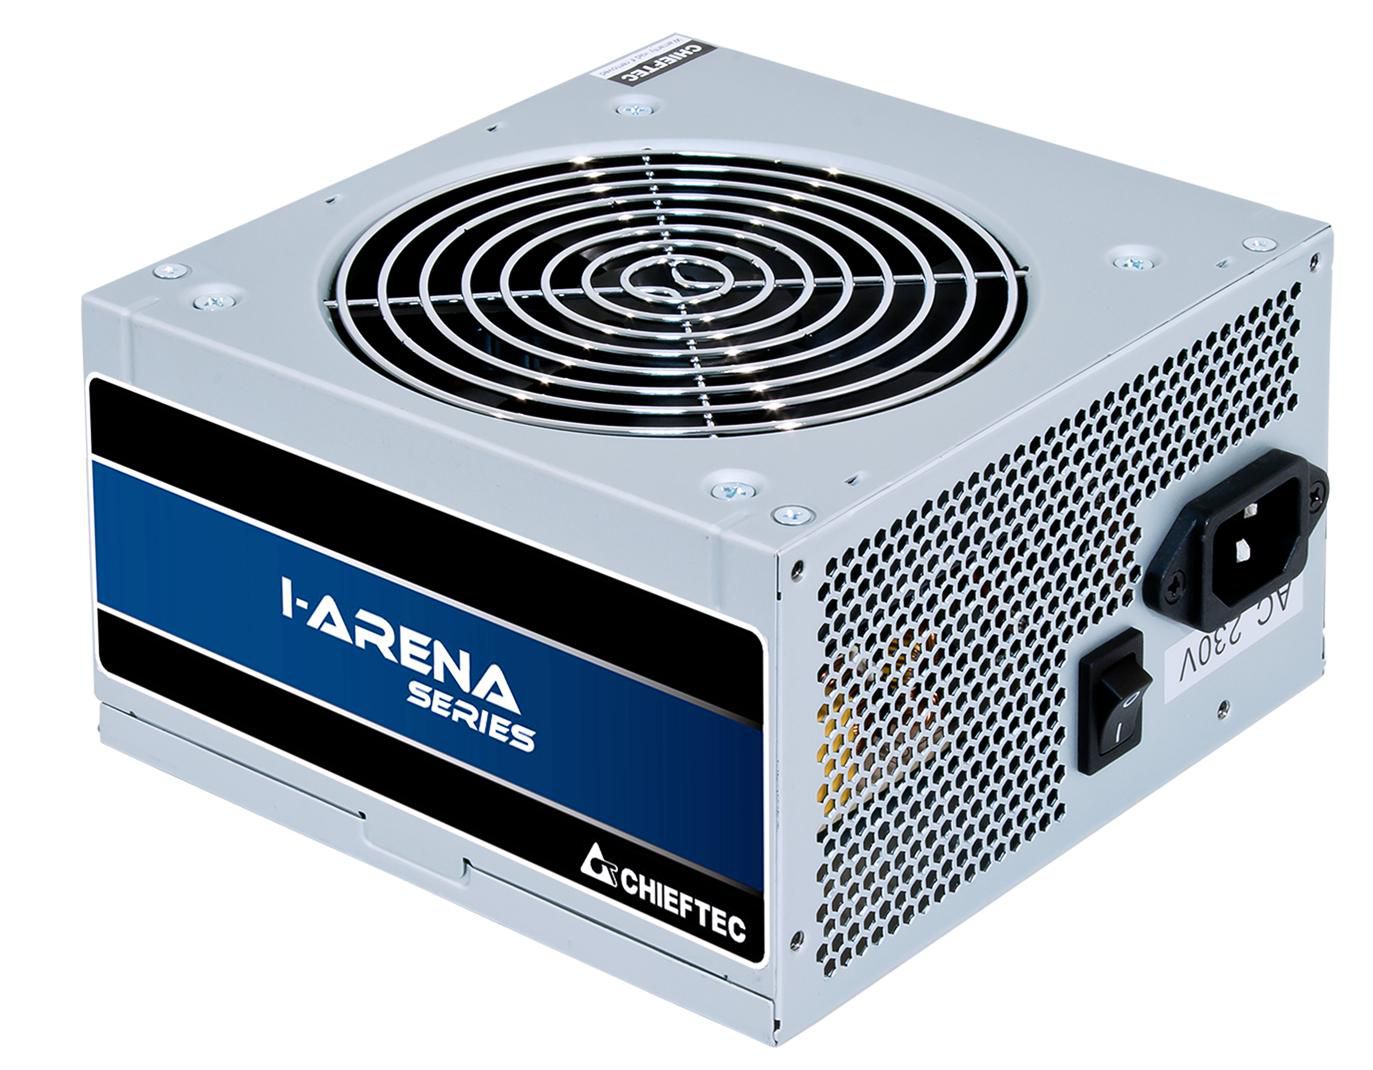 CHIEFTEC IArena Serie GPB-400S Netzteil - 400 Watt